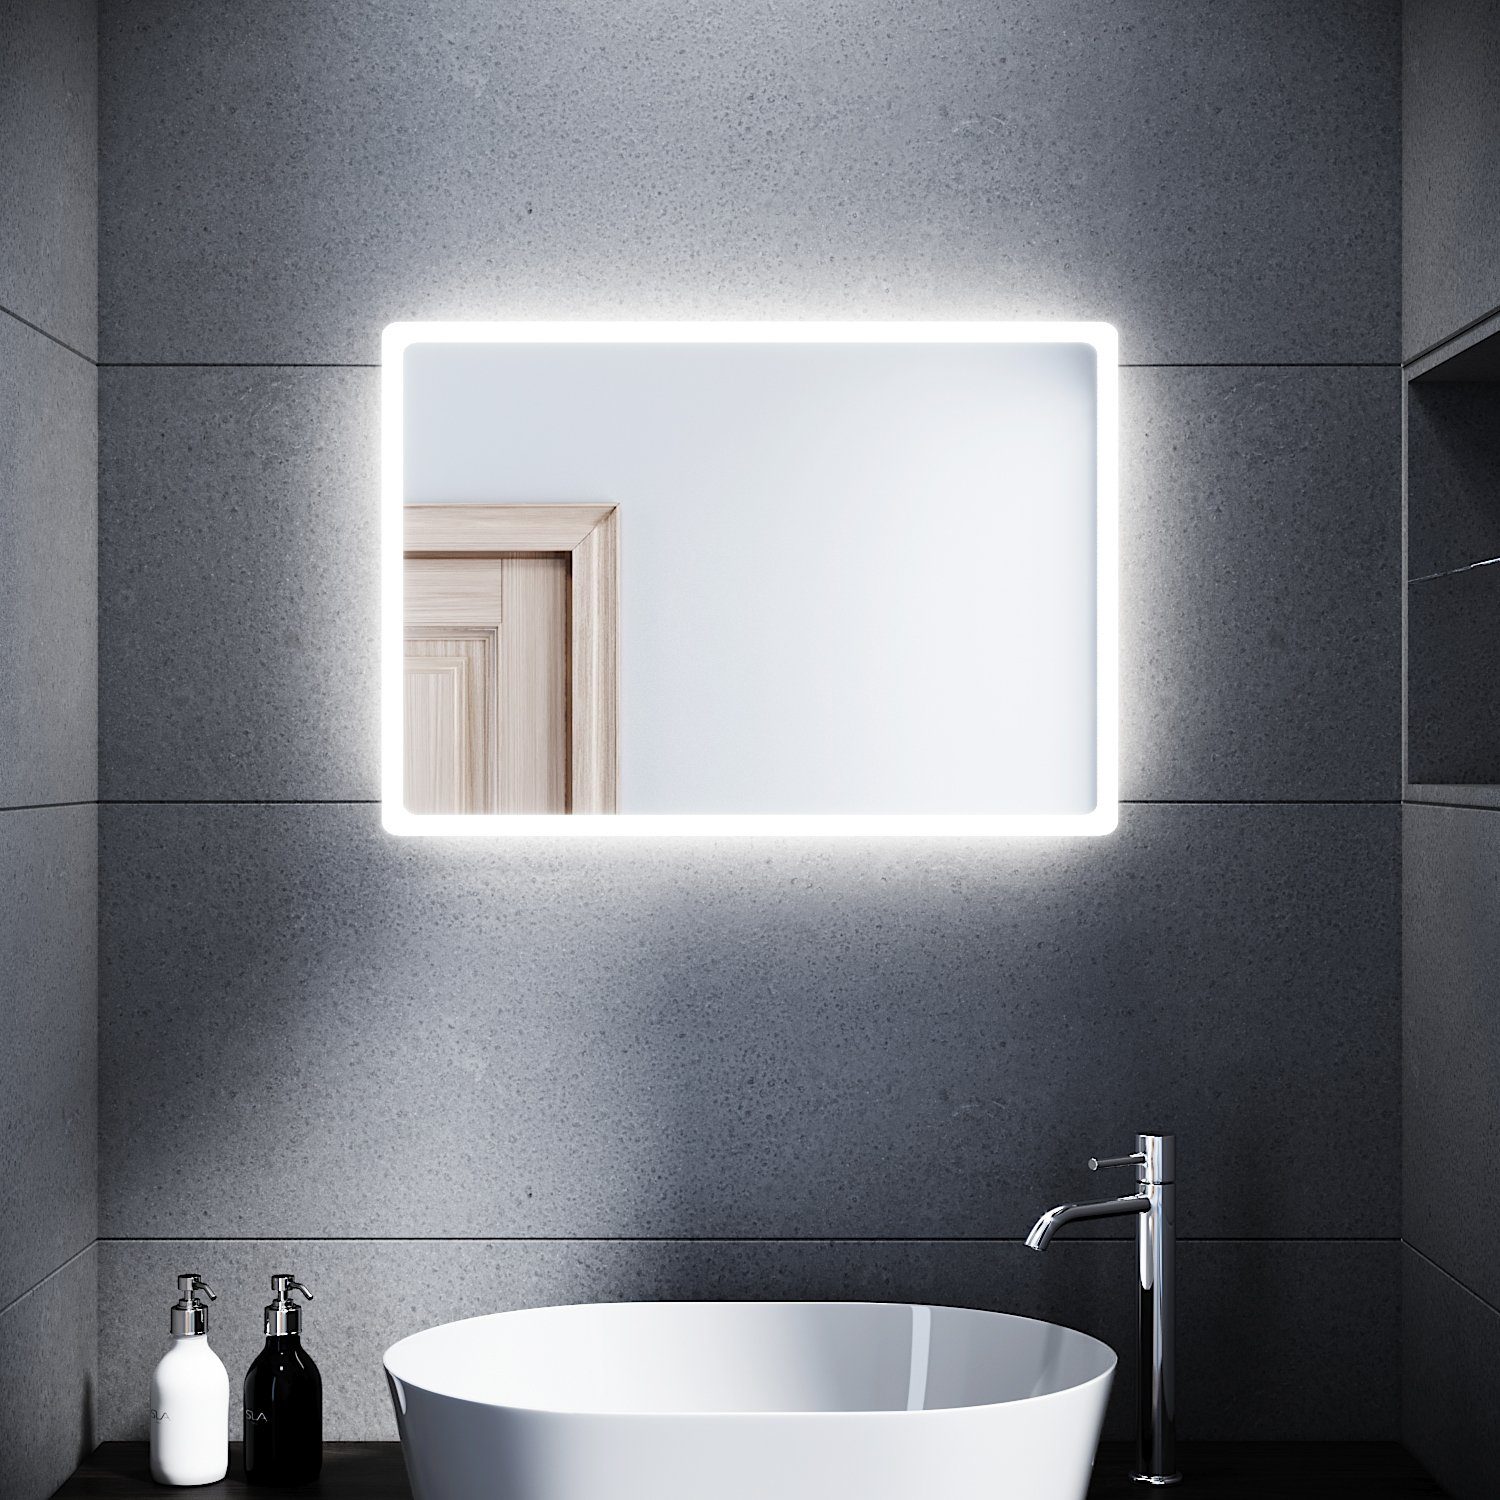 SONNI Badspiegel Badspiegel mit Beleuchtung 80 x 60 cm Wandspiegel Spiegel, Badezimmerspiegel kaltweiß IP44 Badezimmer Bad Spiegel